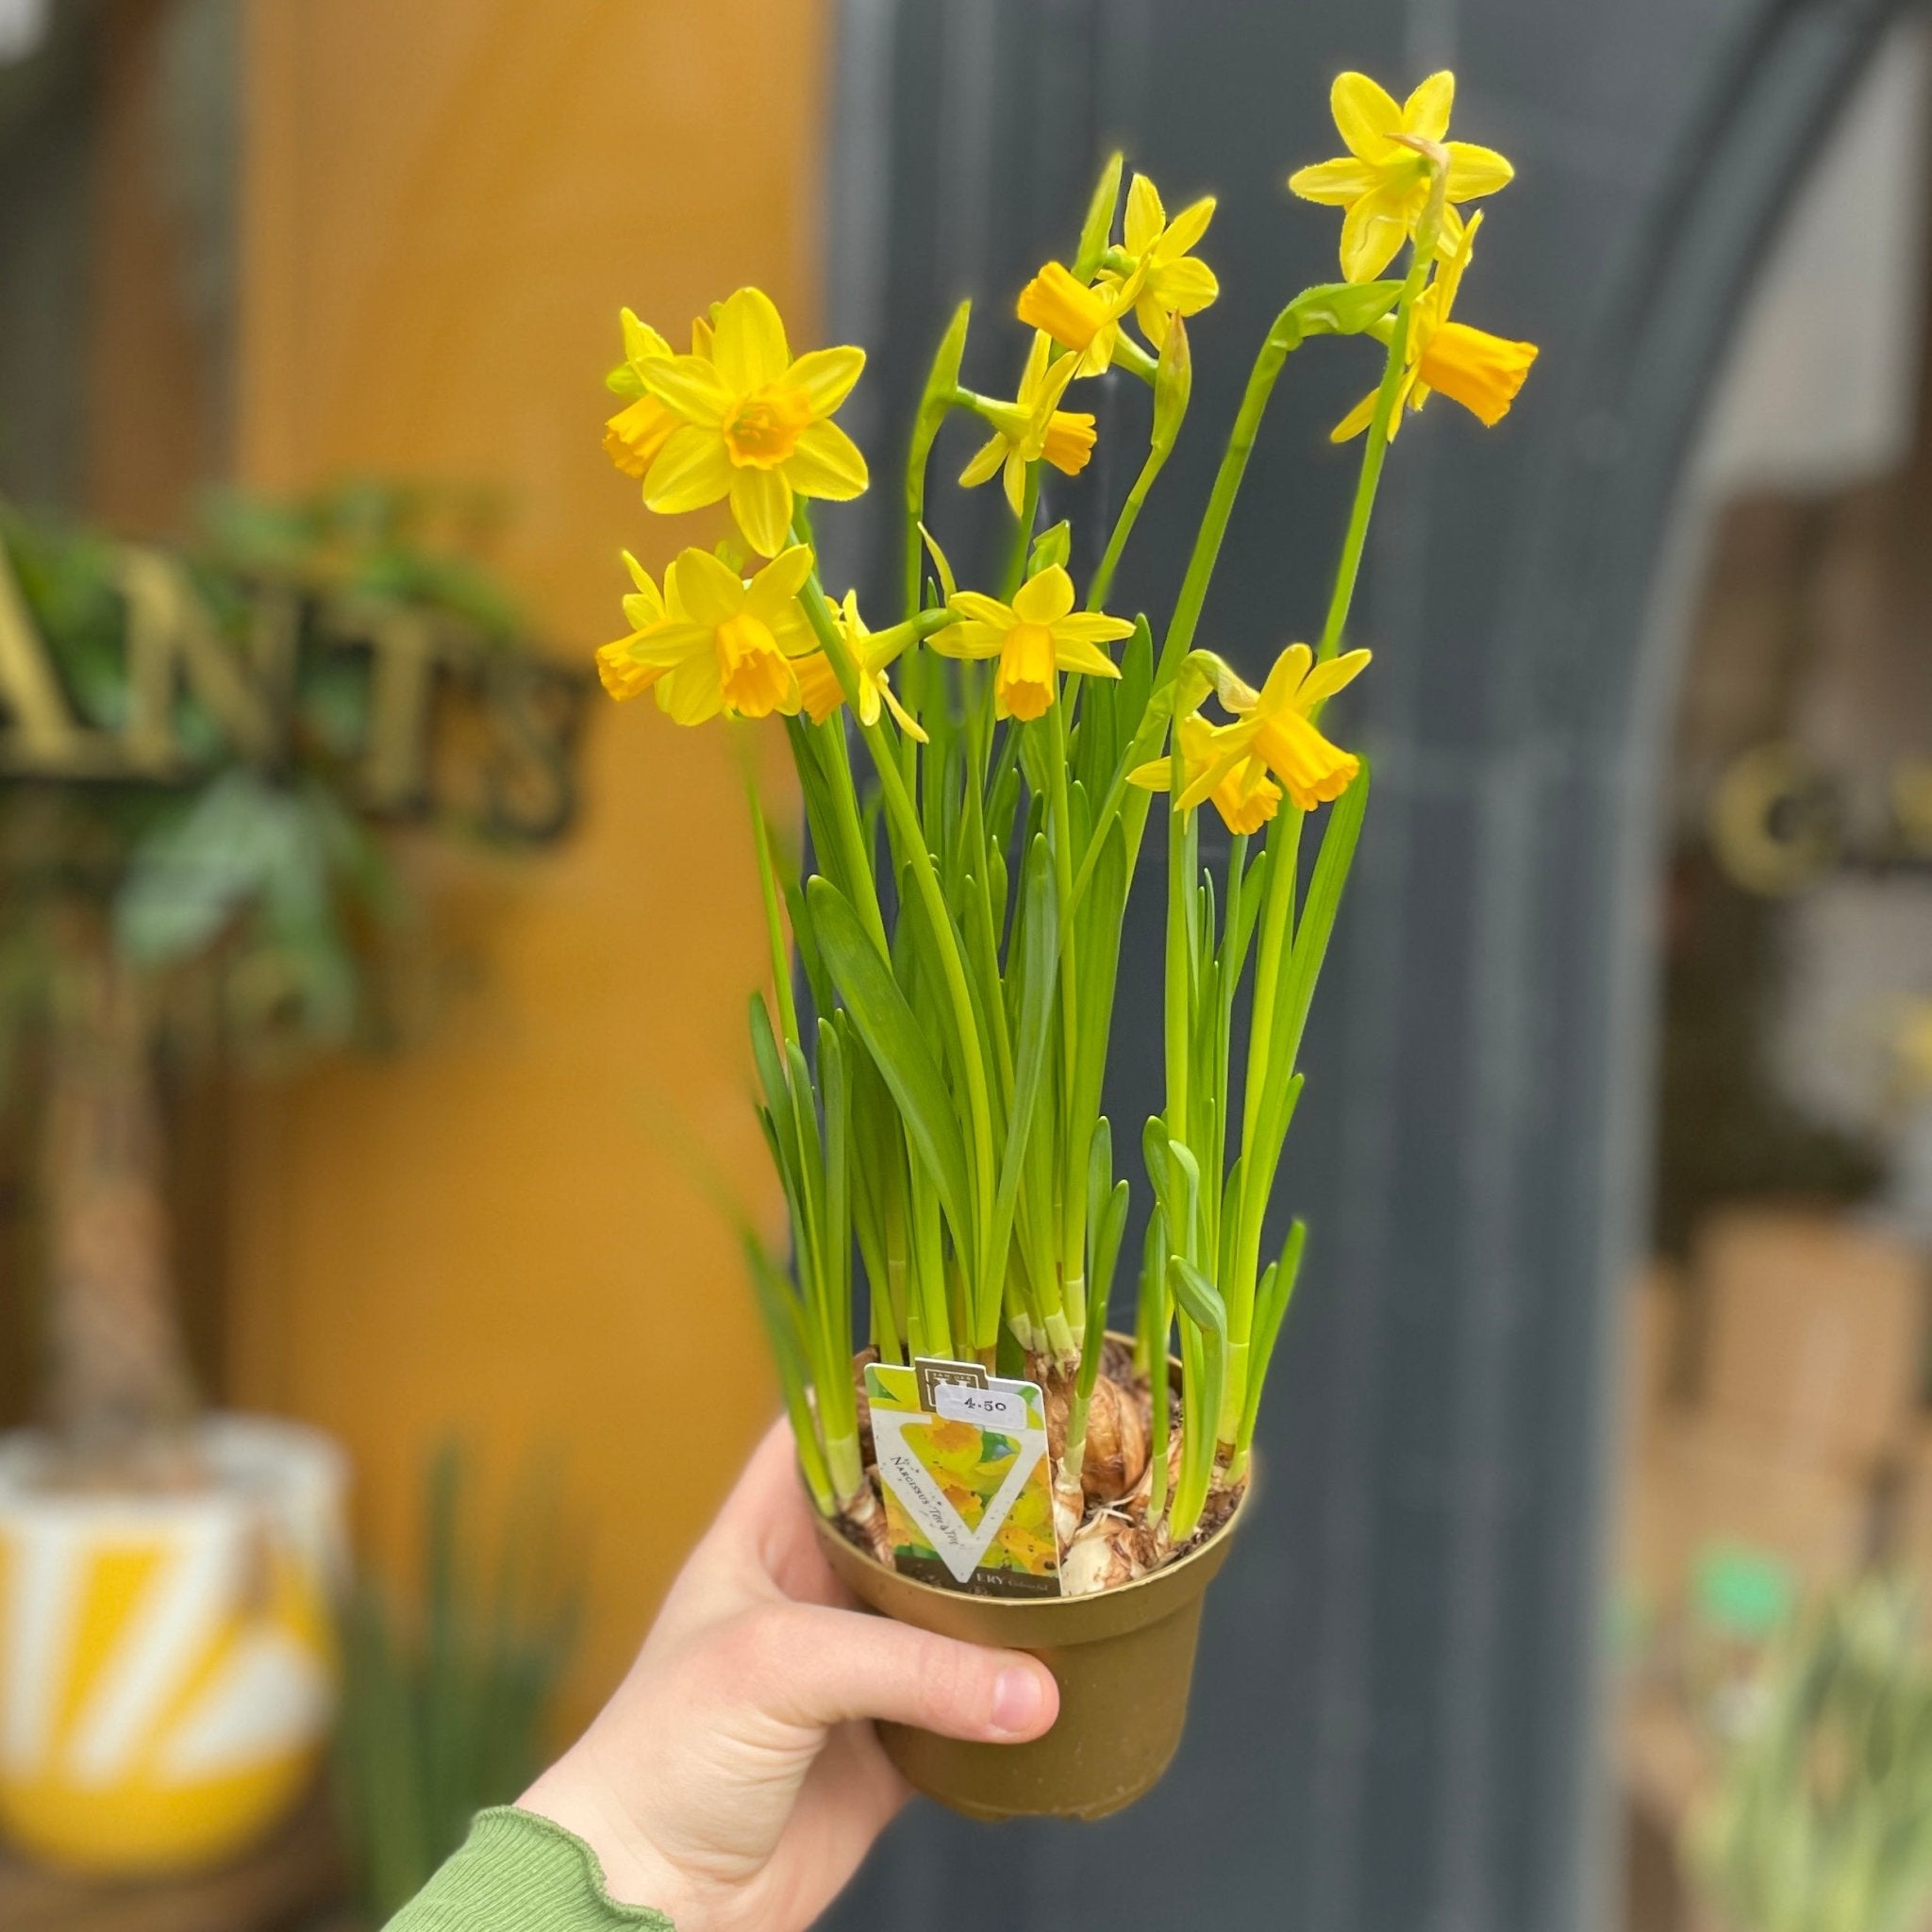 Narcissus 'Tête-à-tête' - grow urban. UK